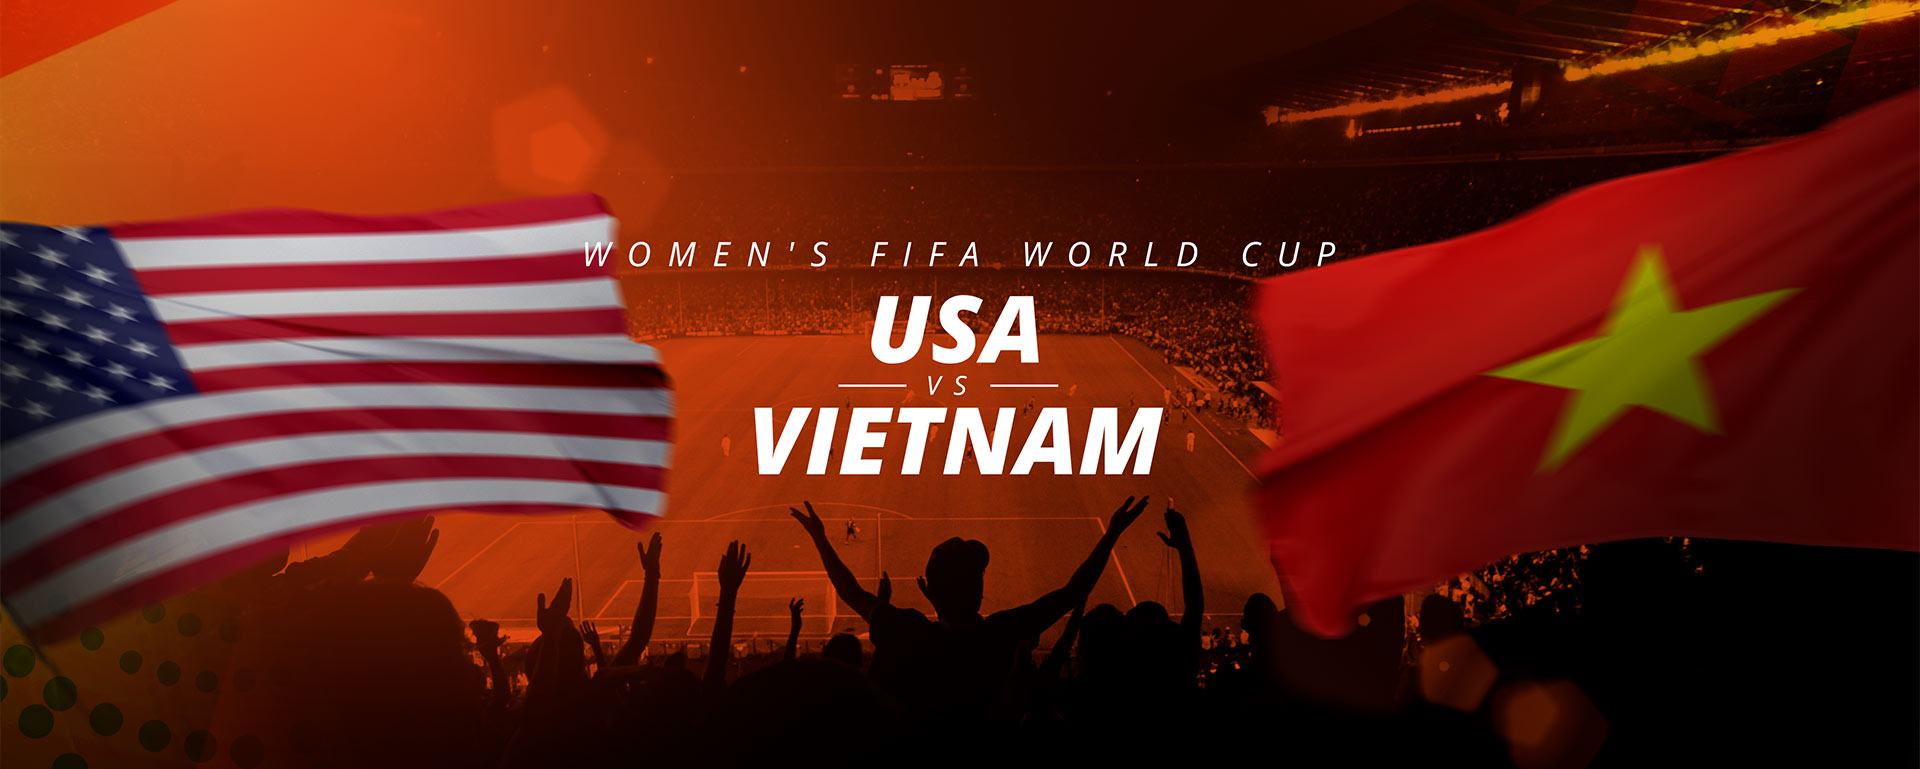 WOMEN’S WORLD CUP: USA V VIETNAM